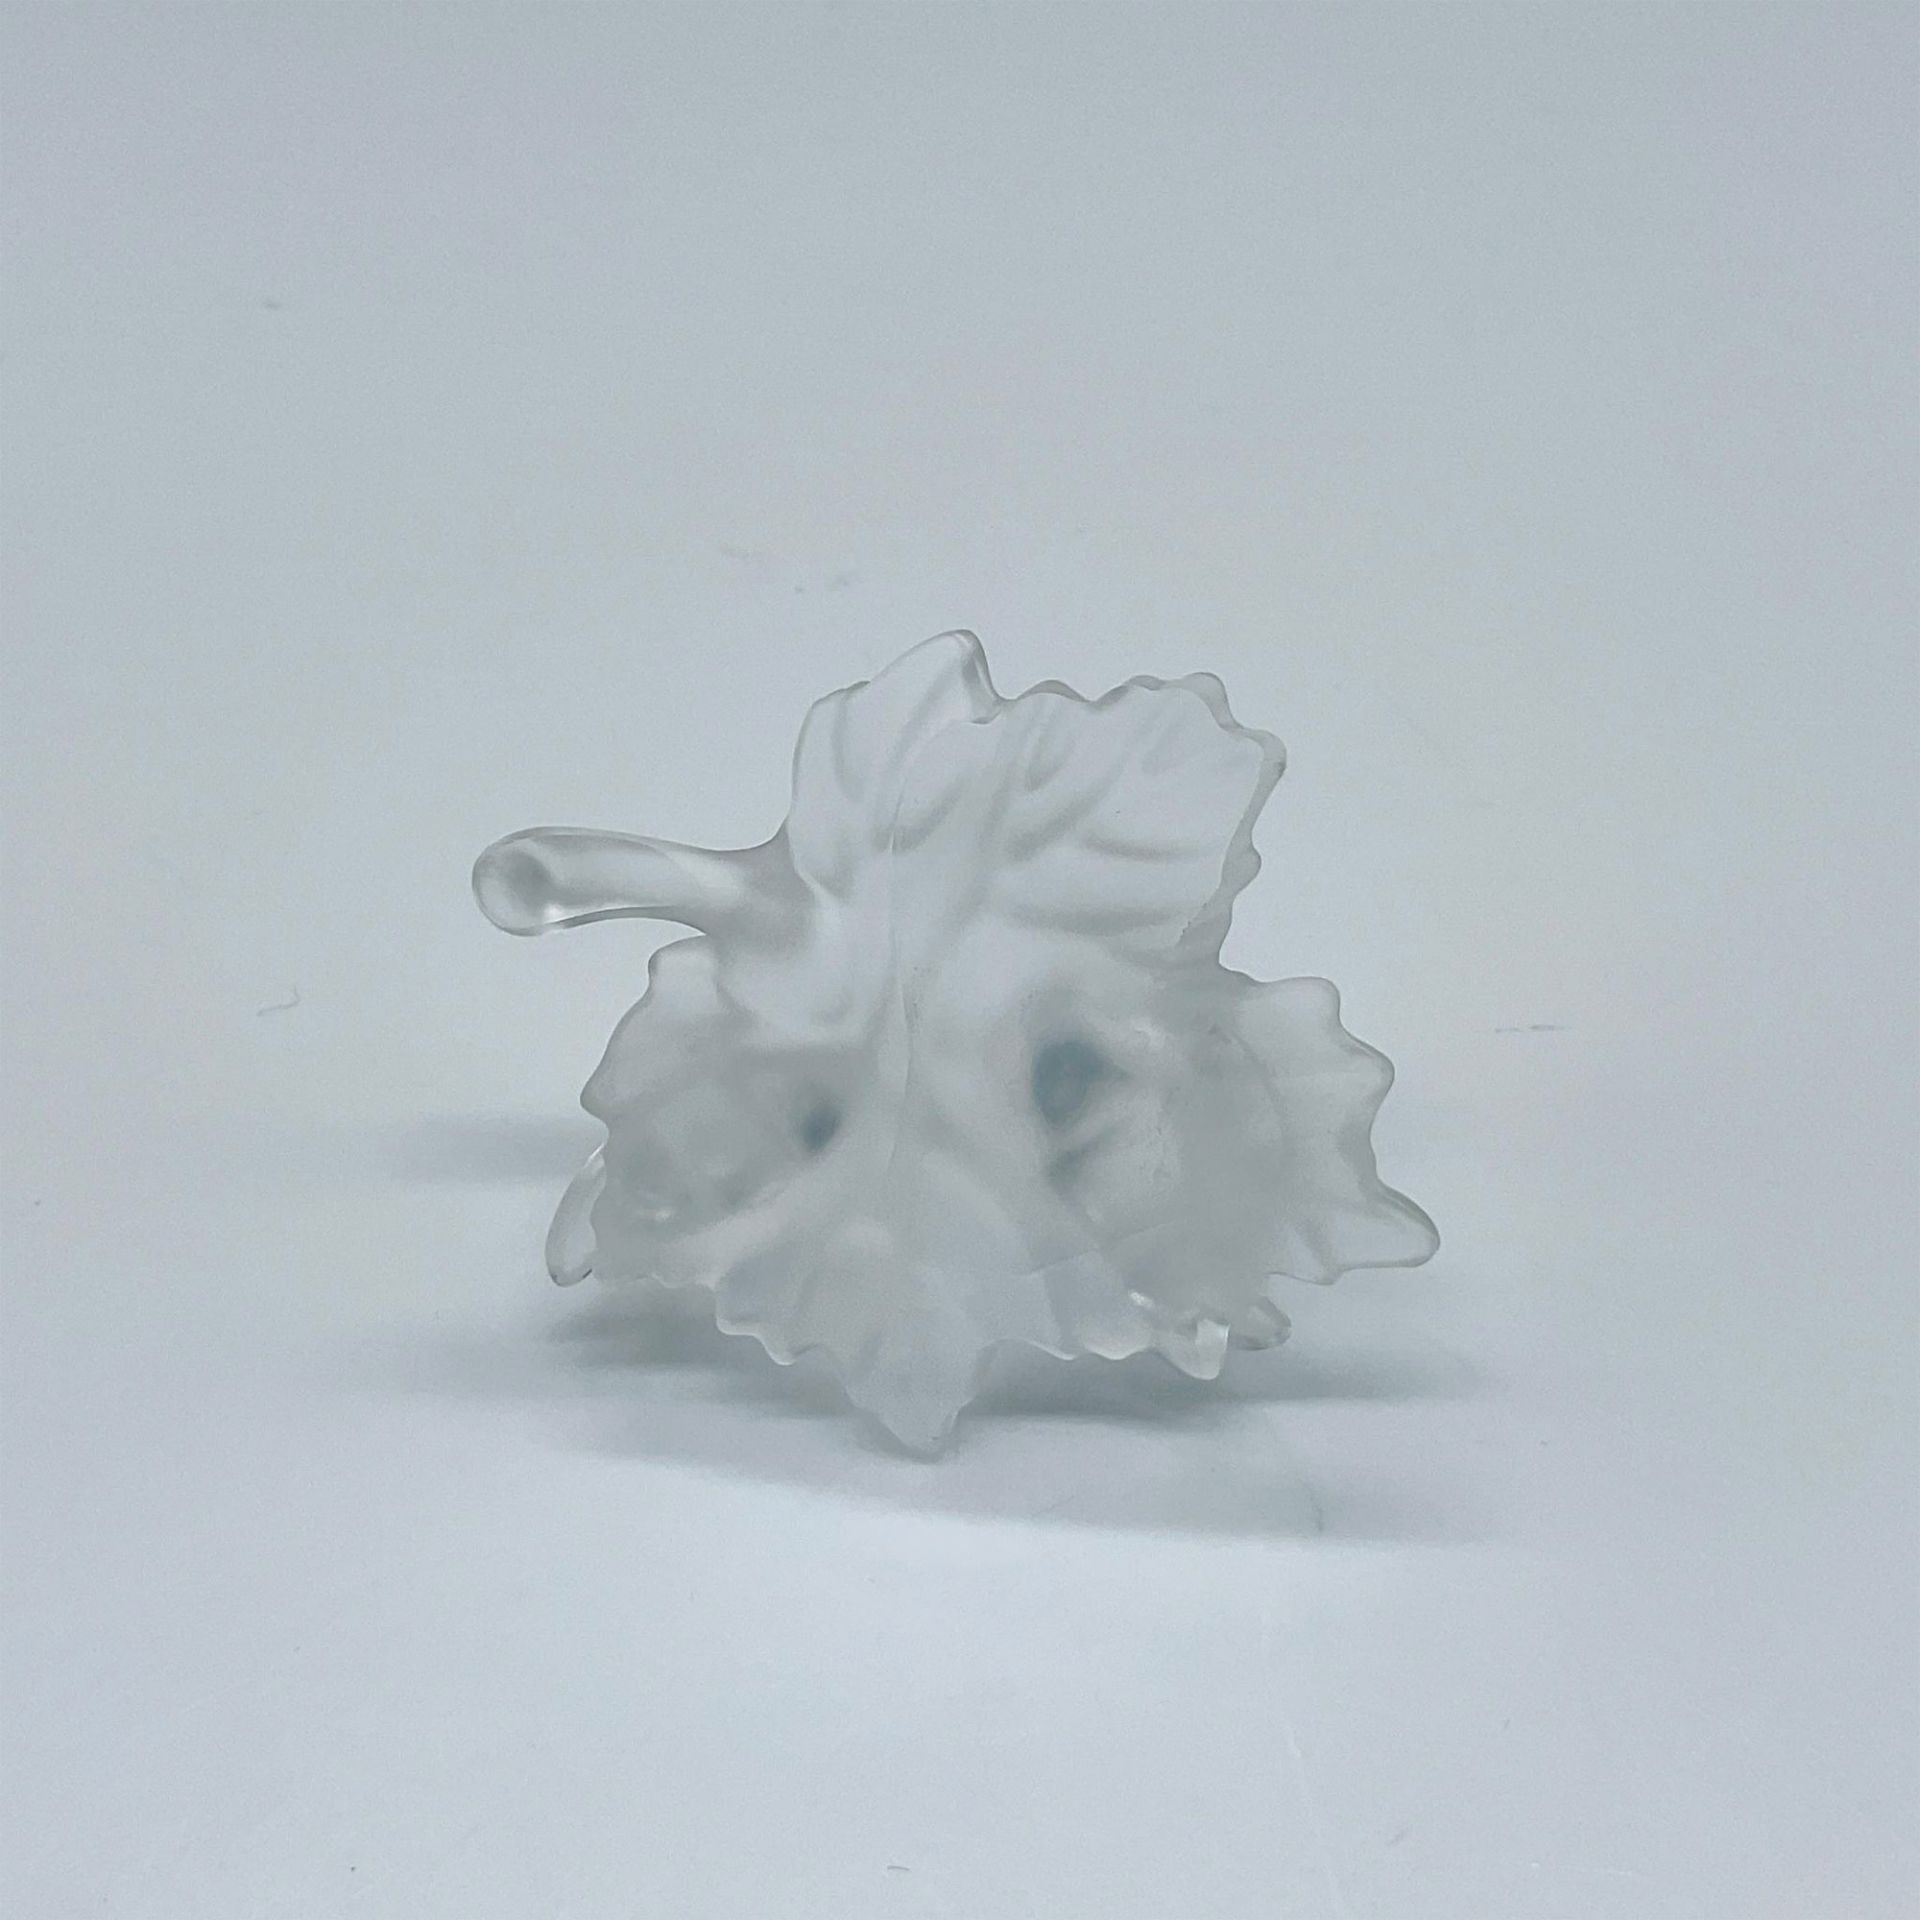 Swarovski Crystal Figurine, Snail Babies on Vine Leaf - Image 3 of 3